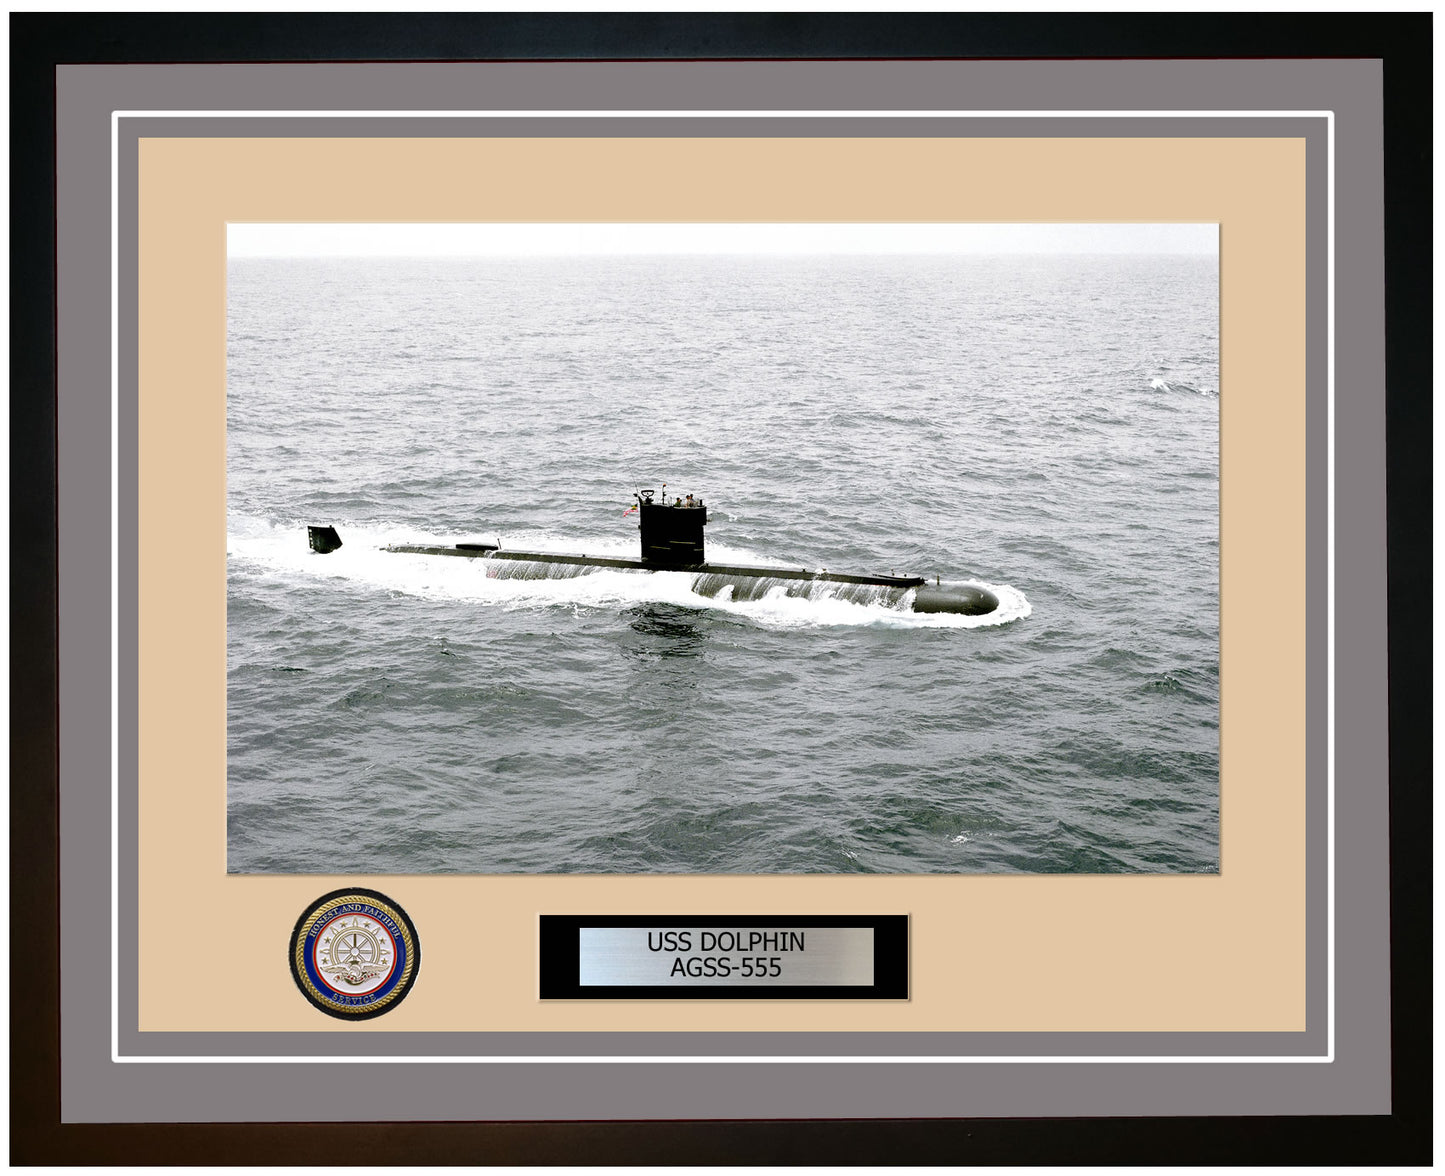 USS Dolphin AGSS-555 Framed Navy Ship Photo Grey